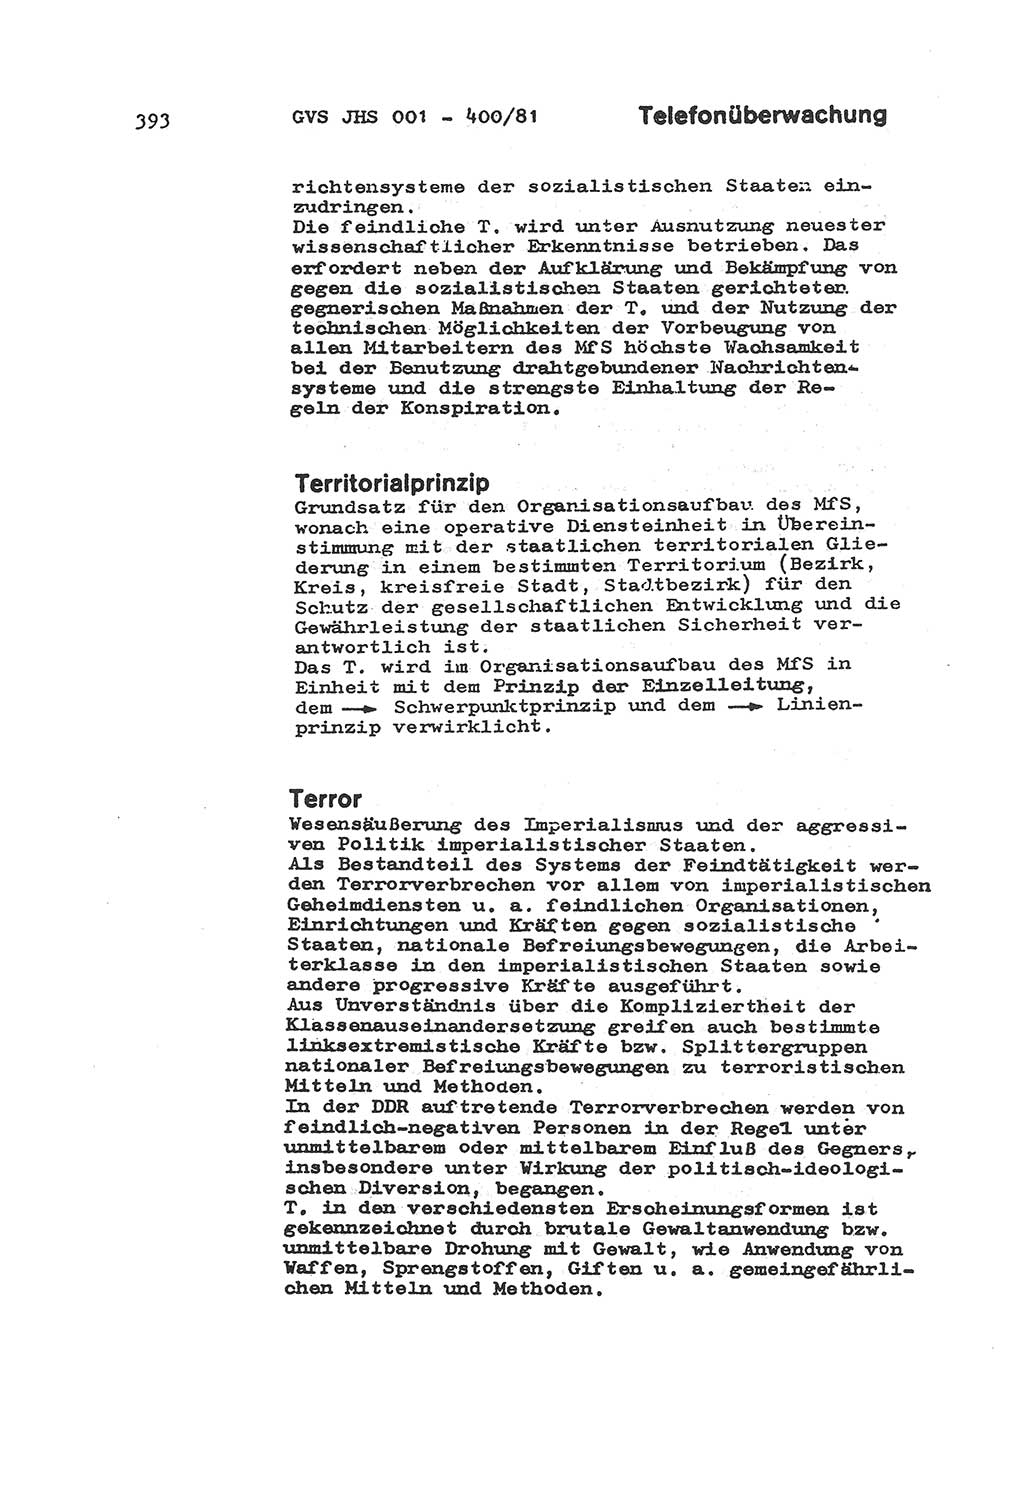 Wörterbuch der politisch-operativen Arbeit, Ministerium für Staatssicherheit (MfS) [Deutsche Demokratische Republik (DDR)], Juristische Hochschule (JHS), Geheime Verschlußsache (GVS) o001-400/81, Potsdam 1985, Blatt 393 (Wb. pol.-op. Arb. MfS DDR JHS GVS o001-400/81 1985, Bl. 393)